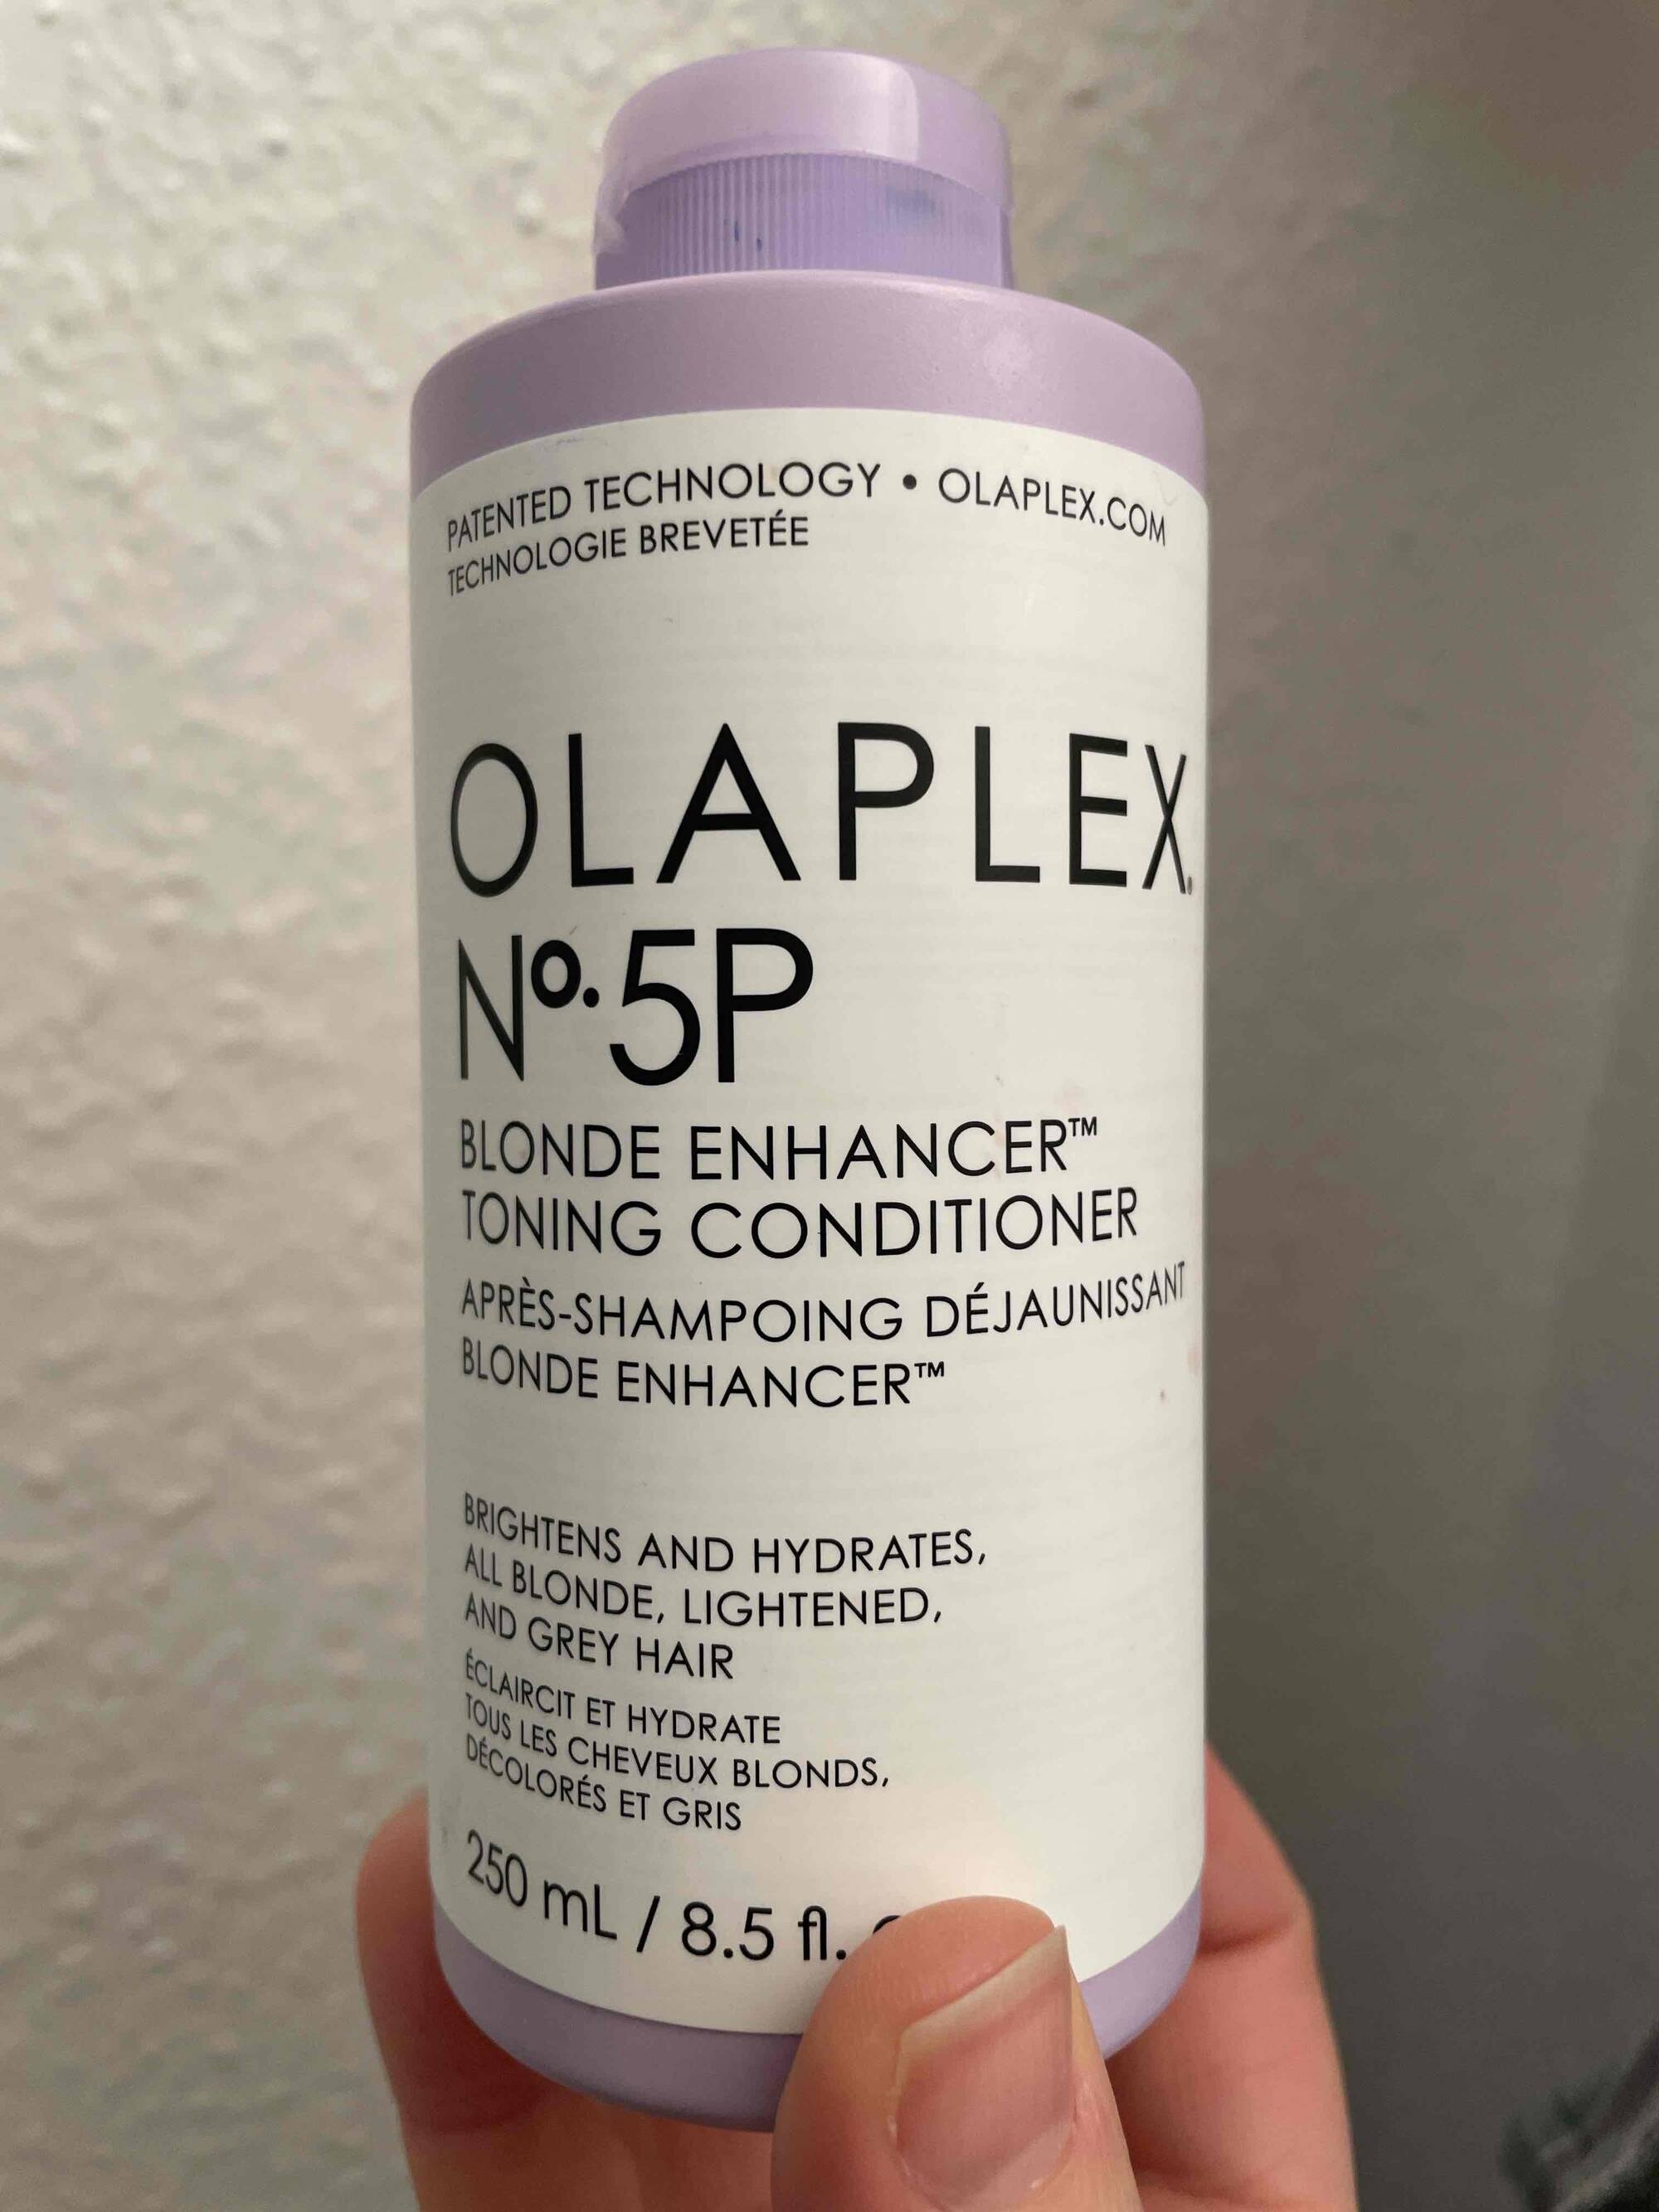 OLAPLEX - Après-shampooing déjaunissant blonde enhancer n°5P